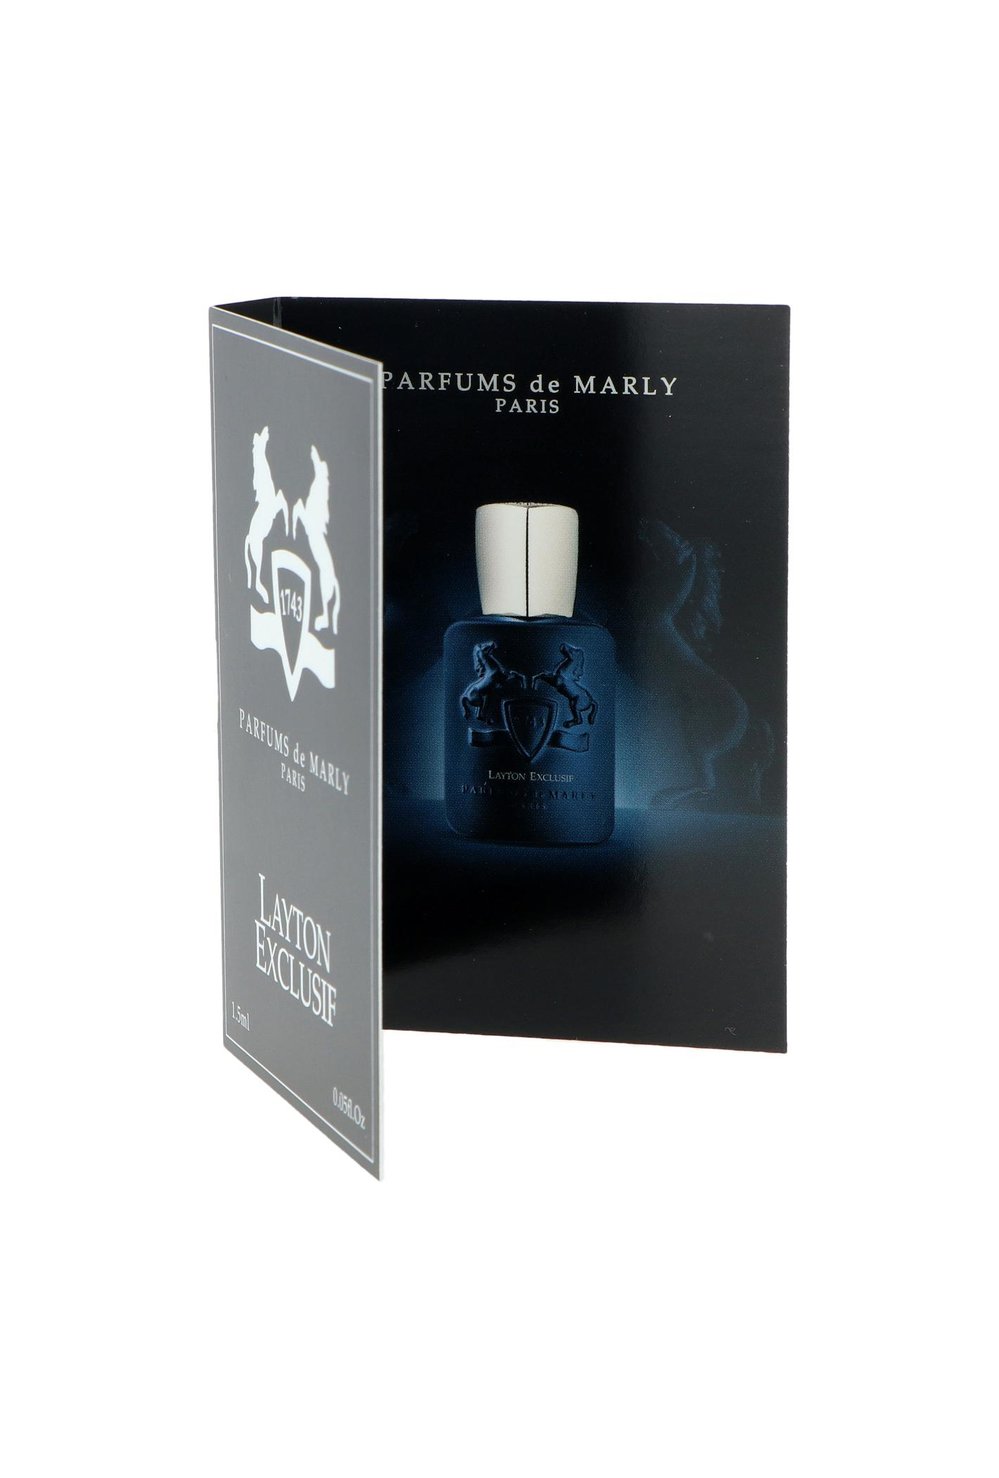 Επίσημο δείγμα αρώματος Parfums De Marly Layton Exclusif 1.5ml 0.05 φλ. ουγκιά